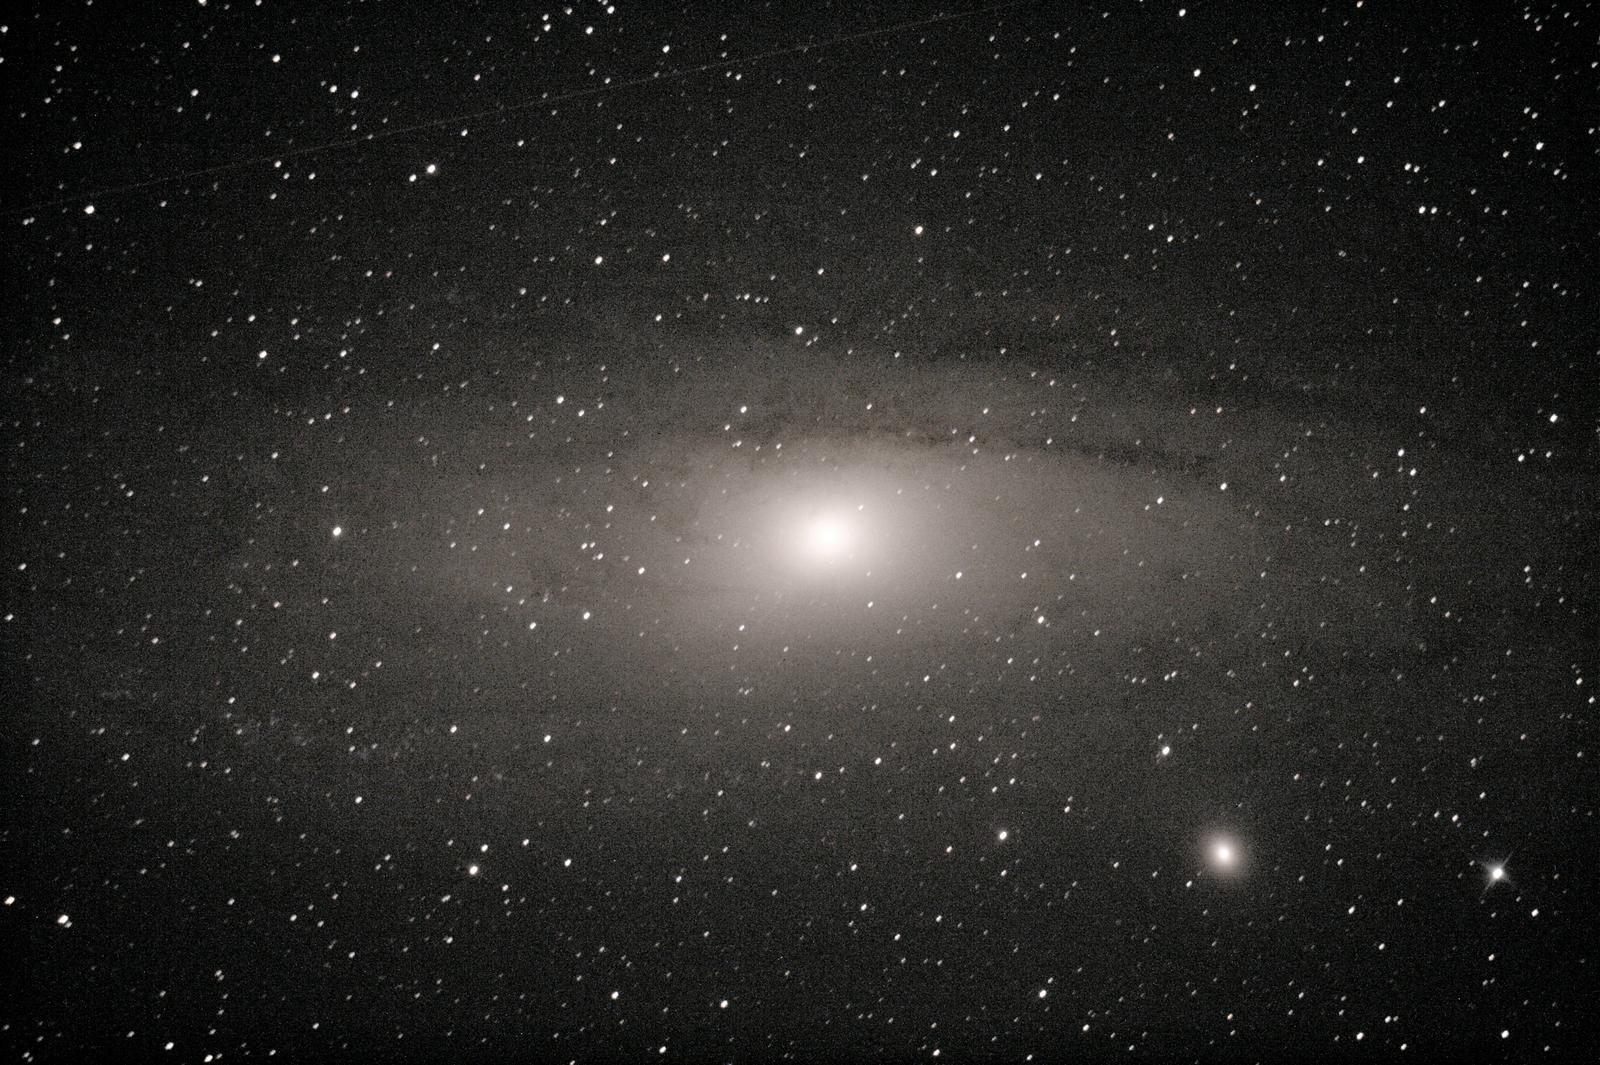 M31 : galaxie d'Andromède - à Saint-Martin (32) - 29 juillet 2017 - Skywatcher 200/1000 + Canon 1000D défiltré - 3 photos 30sec ISO1600 + 1 photo 180 sec ISO800 Ouverture 5 (donnée par le téléscope) + (3 Darks 120sec ISO800) + (2 offsets 1/4000 ISO 800)